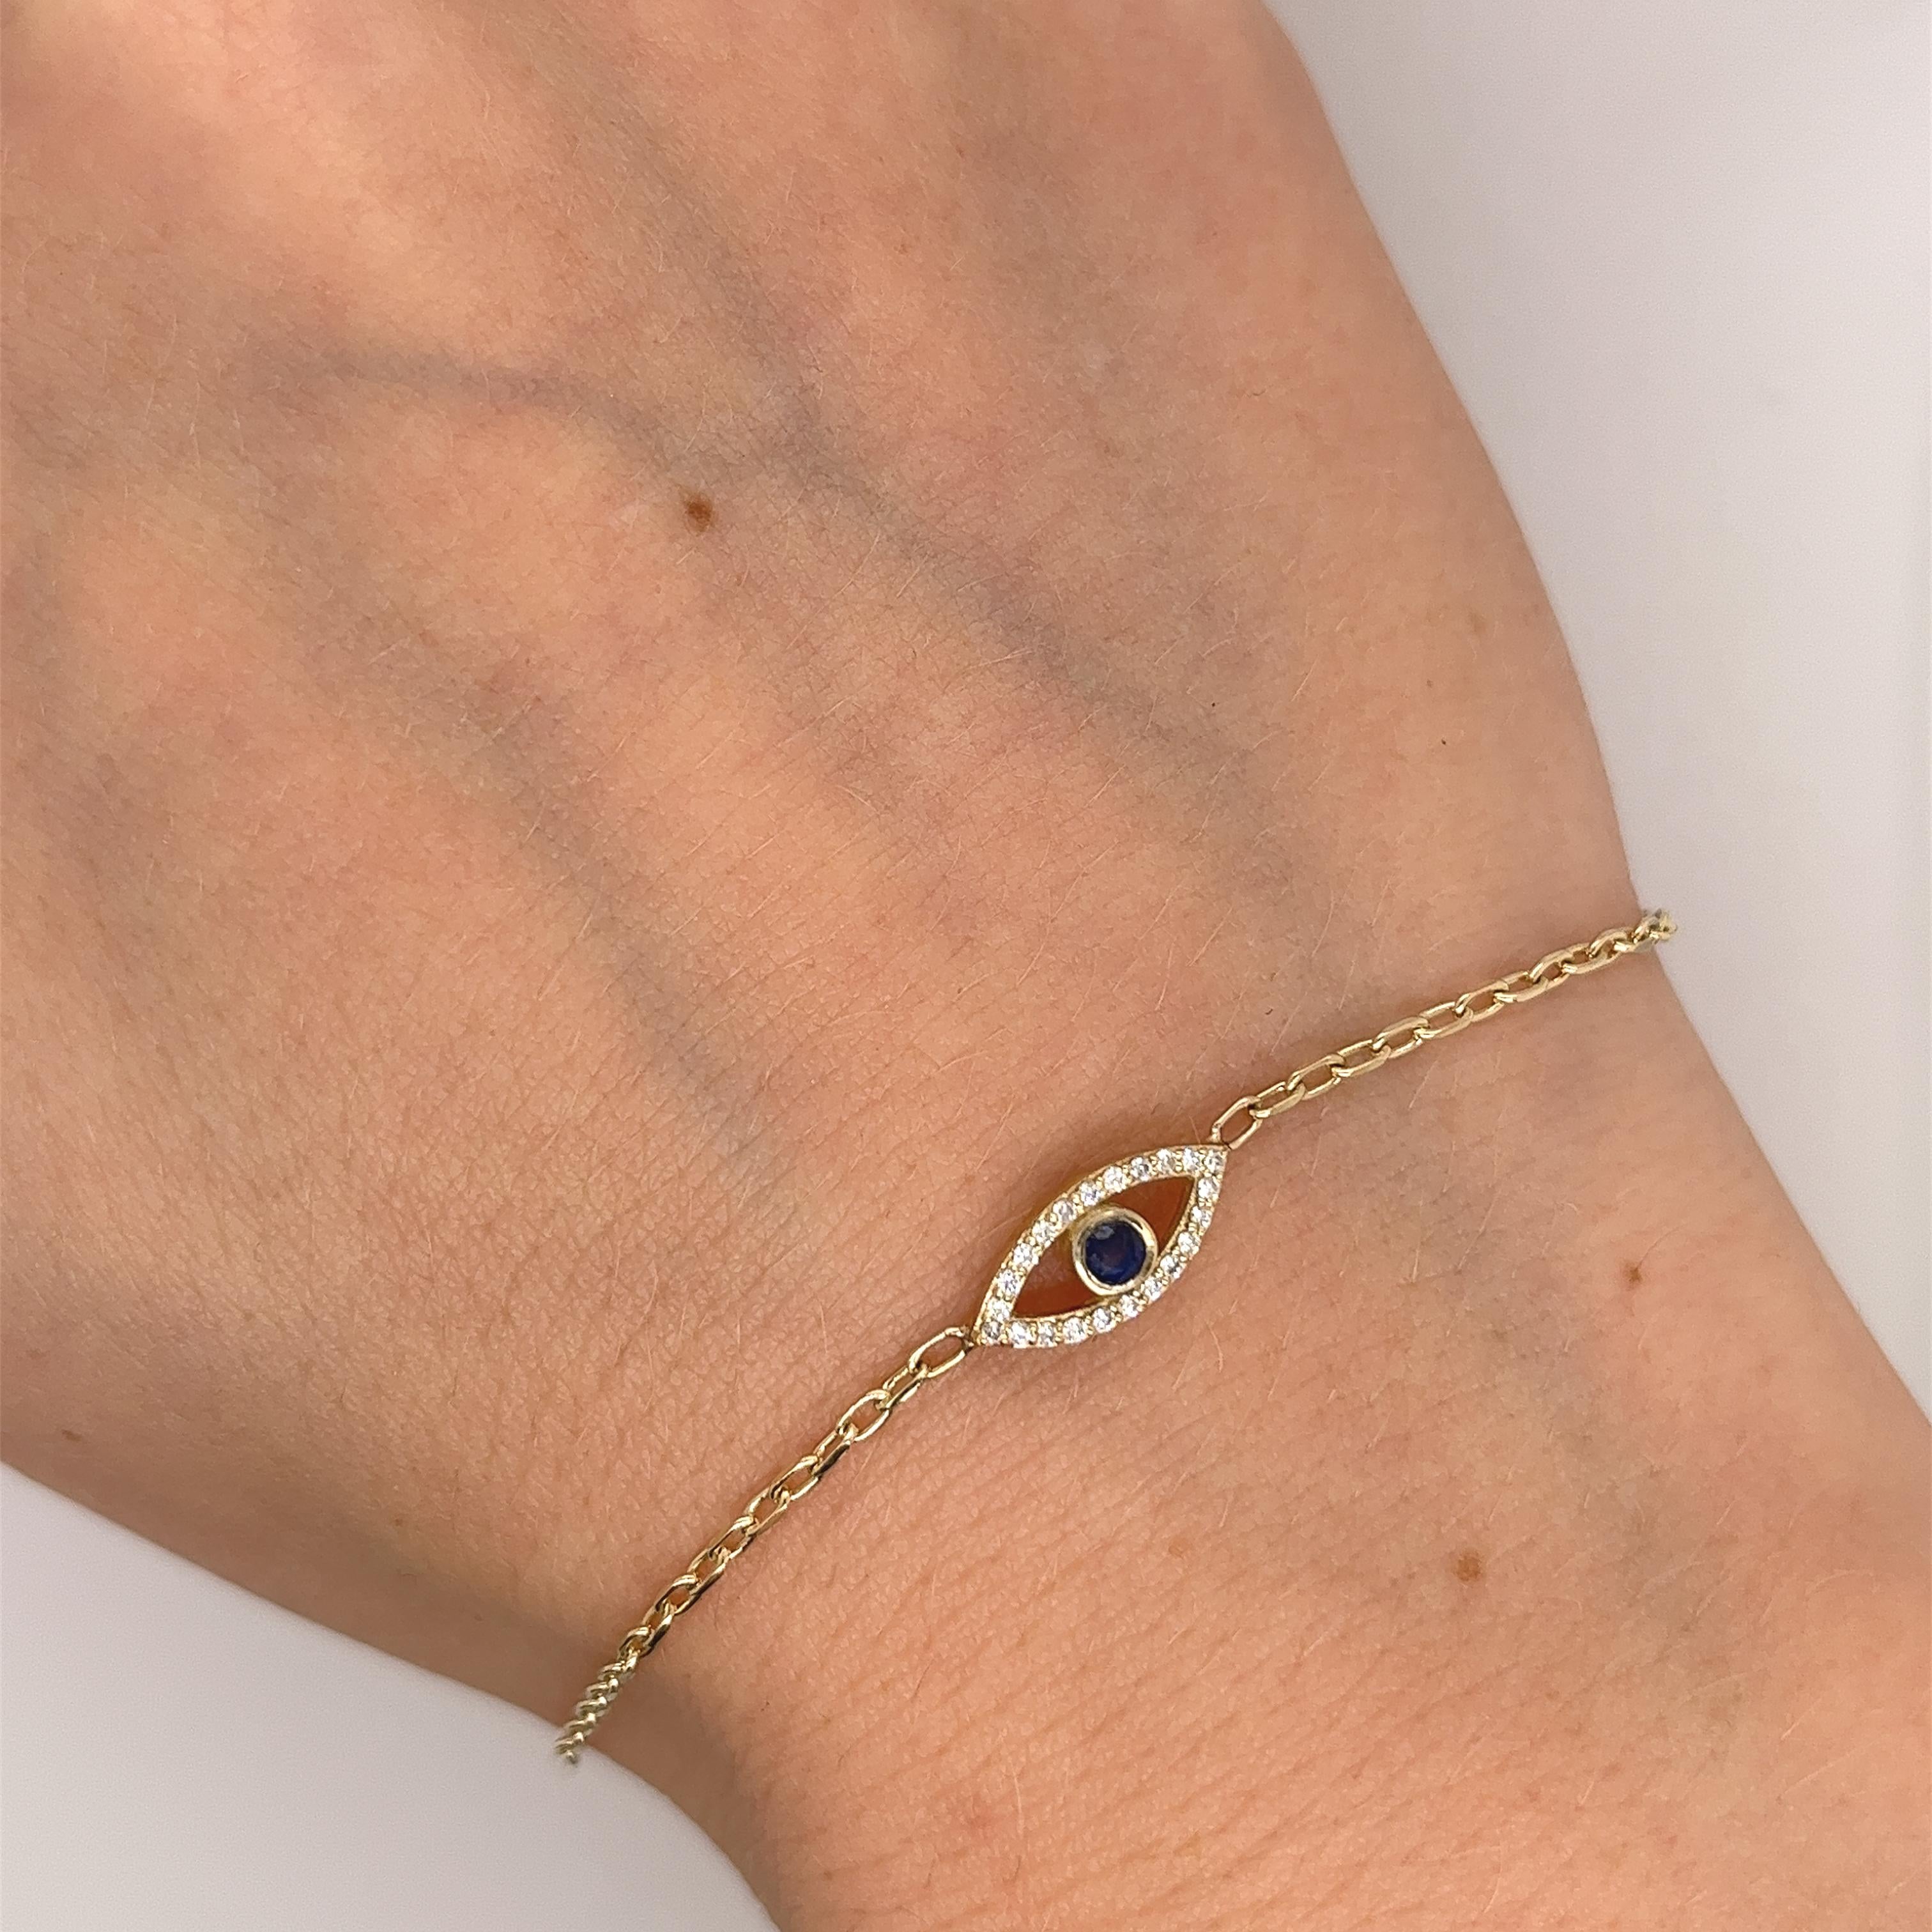 
Made by Jewellery Cave - unser exquisites Armband mit 0,08ct Diamanten und rundem Saphir als böses Auge -
eine bezaubernde Verschmelzung von Stil und Symbolik. 
Das Herzstück dieses faszinierenden Armbands aus 9 Karat Gelbgold ist der auffällige